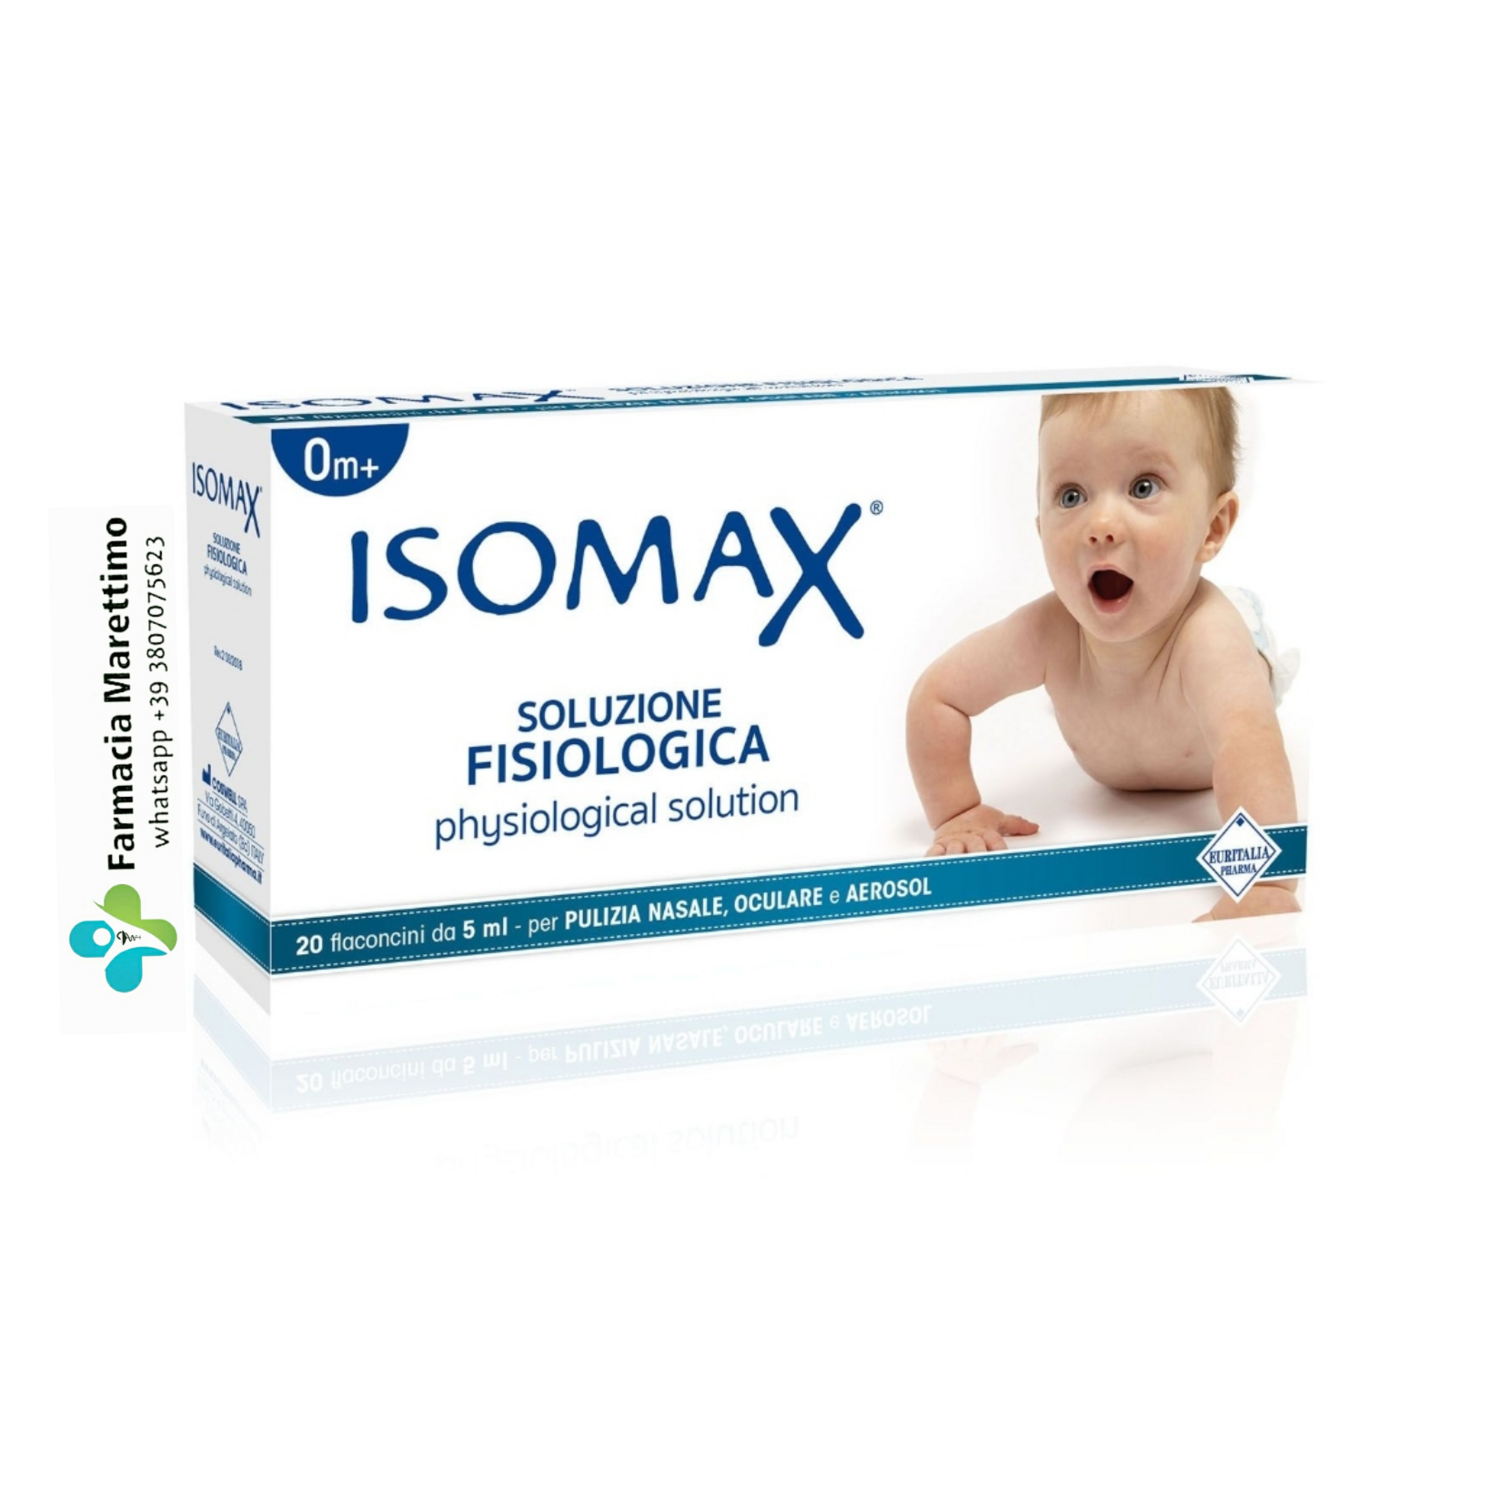 Isomax Soluzione Fisiologica 20 flaconcini utile per la detersione nasale, oculare e per l'aerosolterapia.